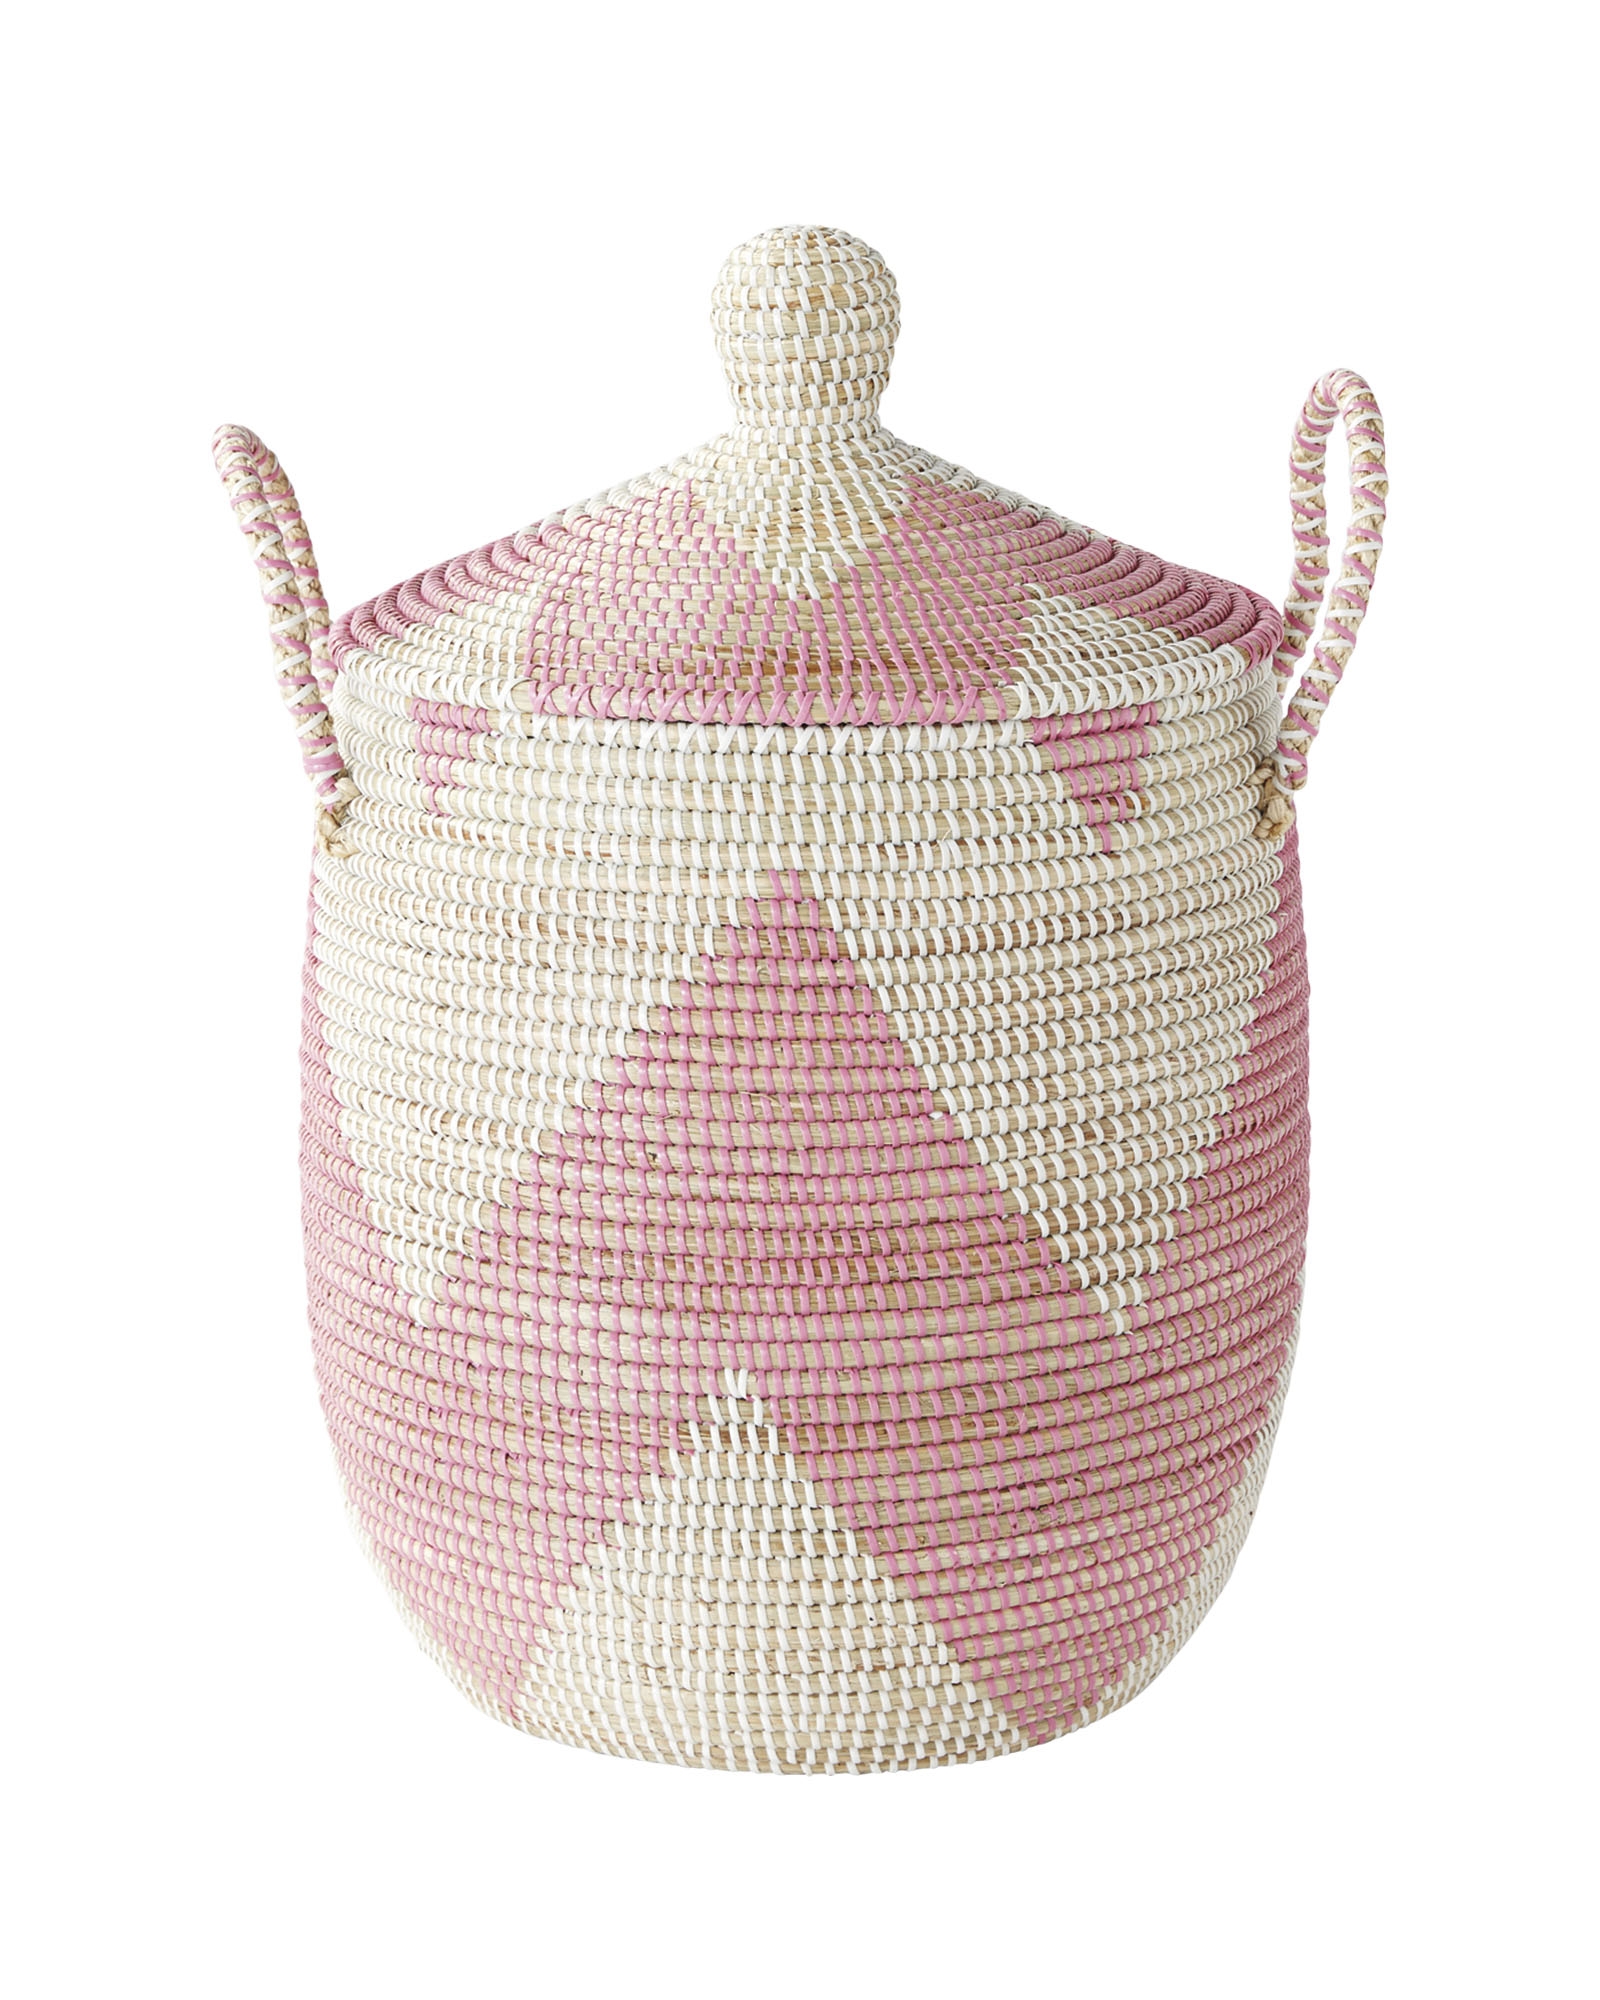 La Jolla Basket-Pink-Small - Image 0